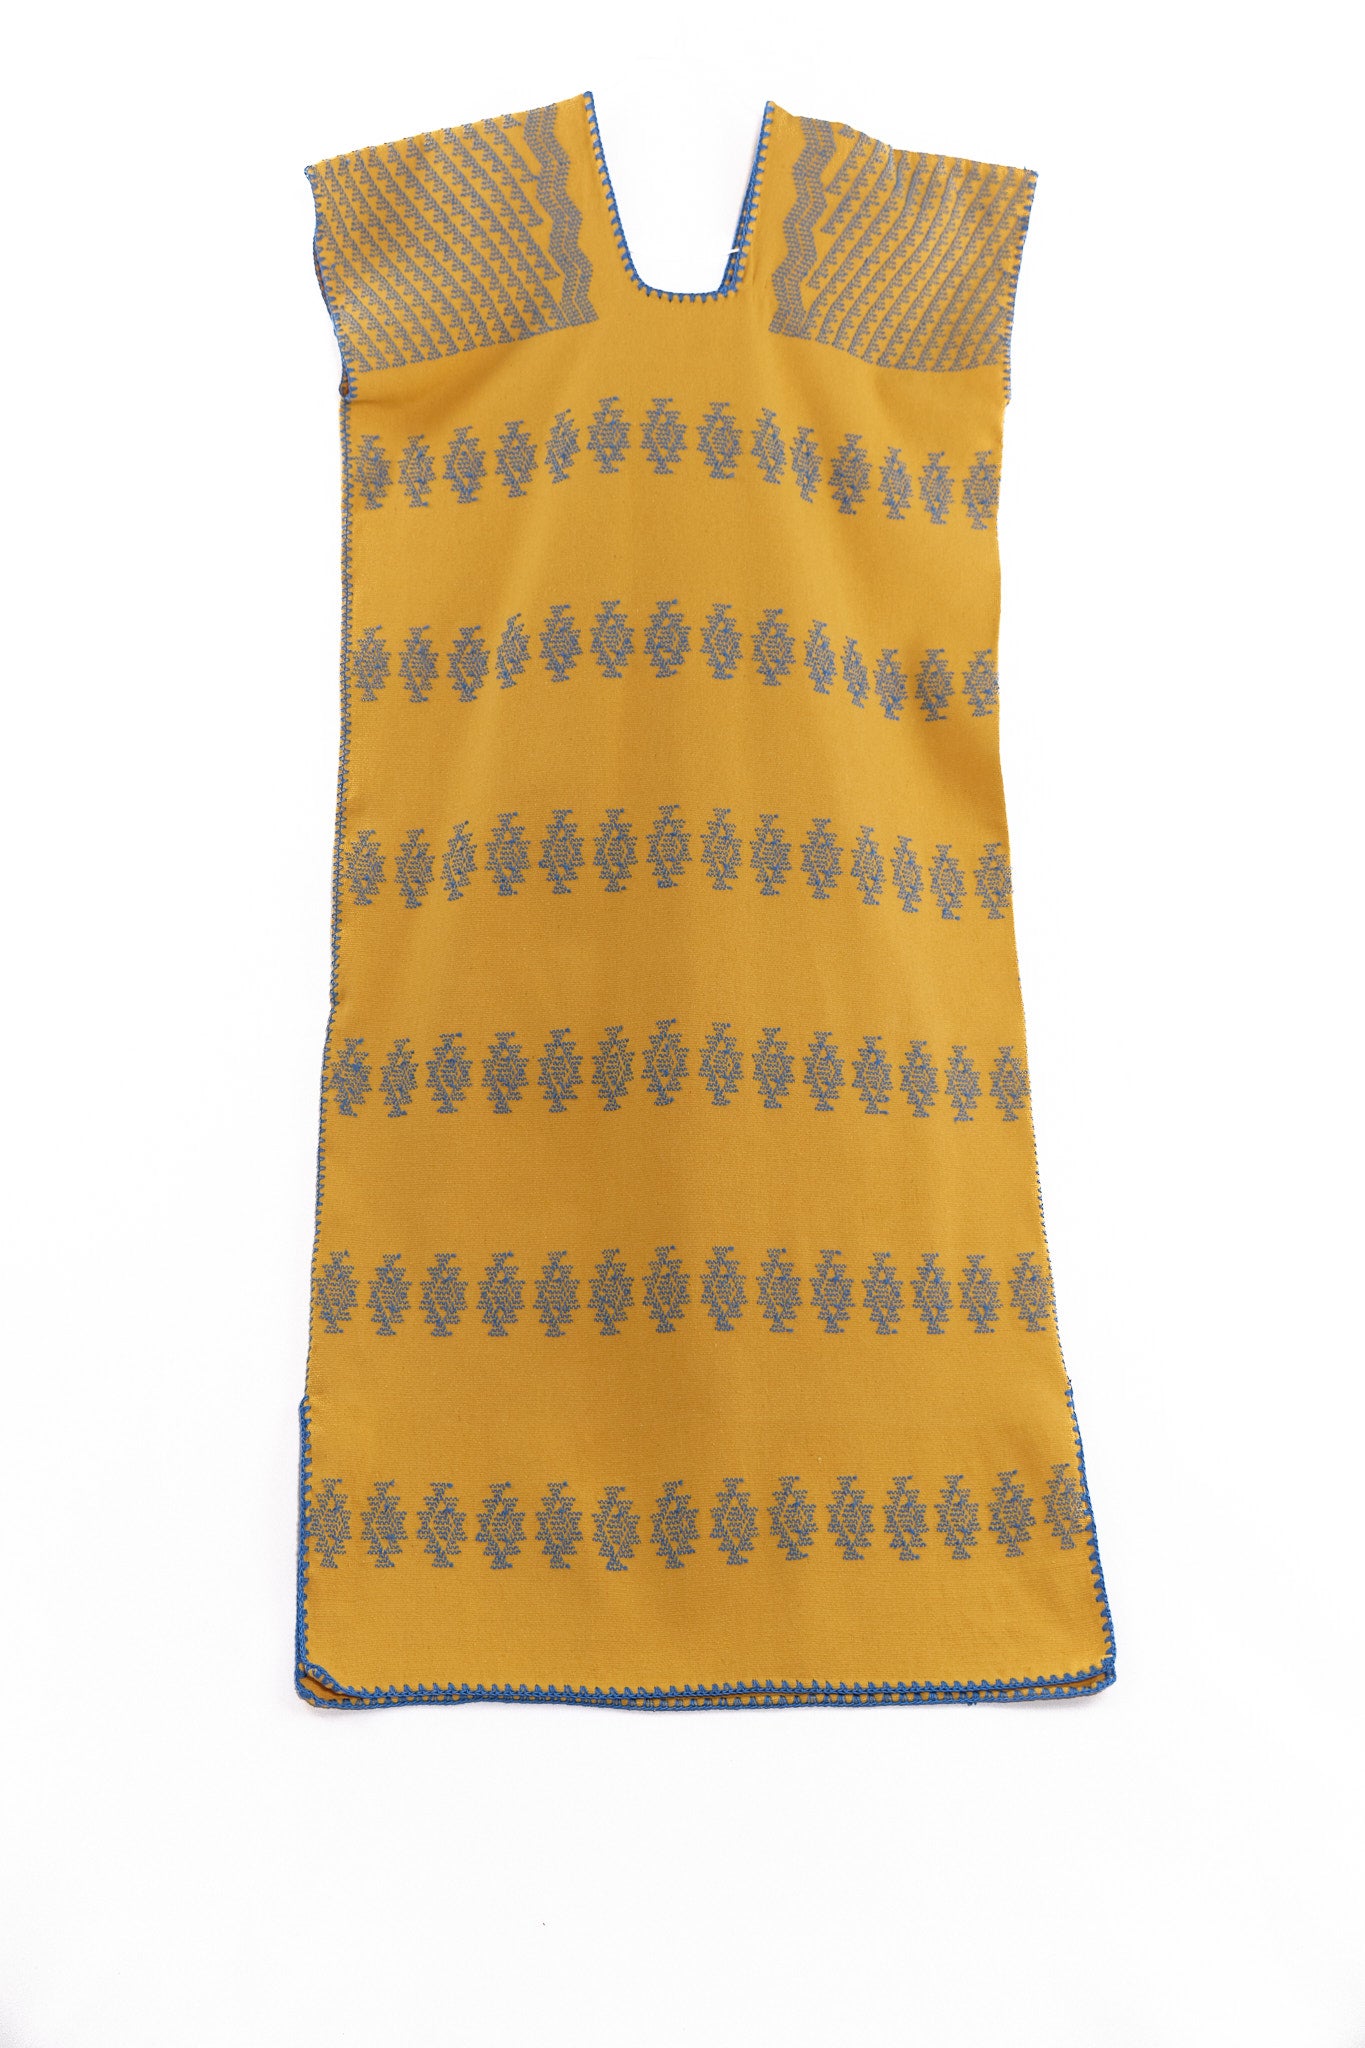 Huipil Dress San Juan mustard yellow with blue brocade GARMENT